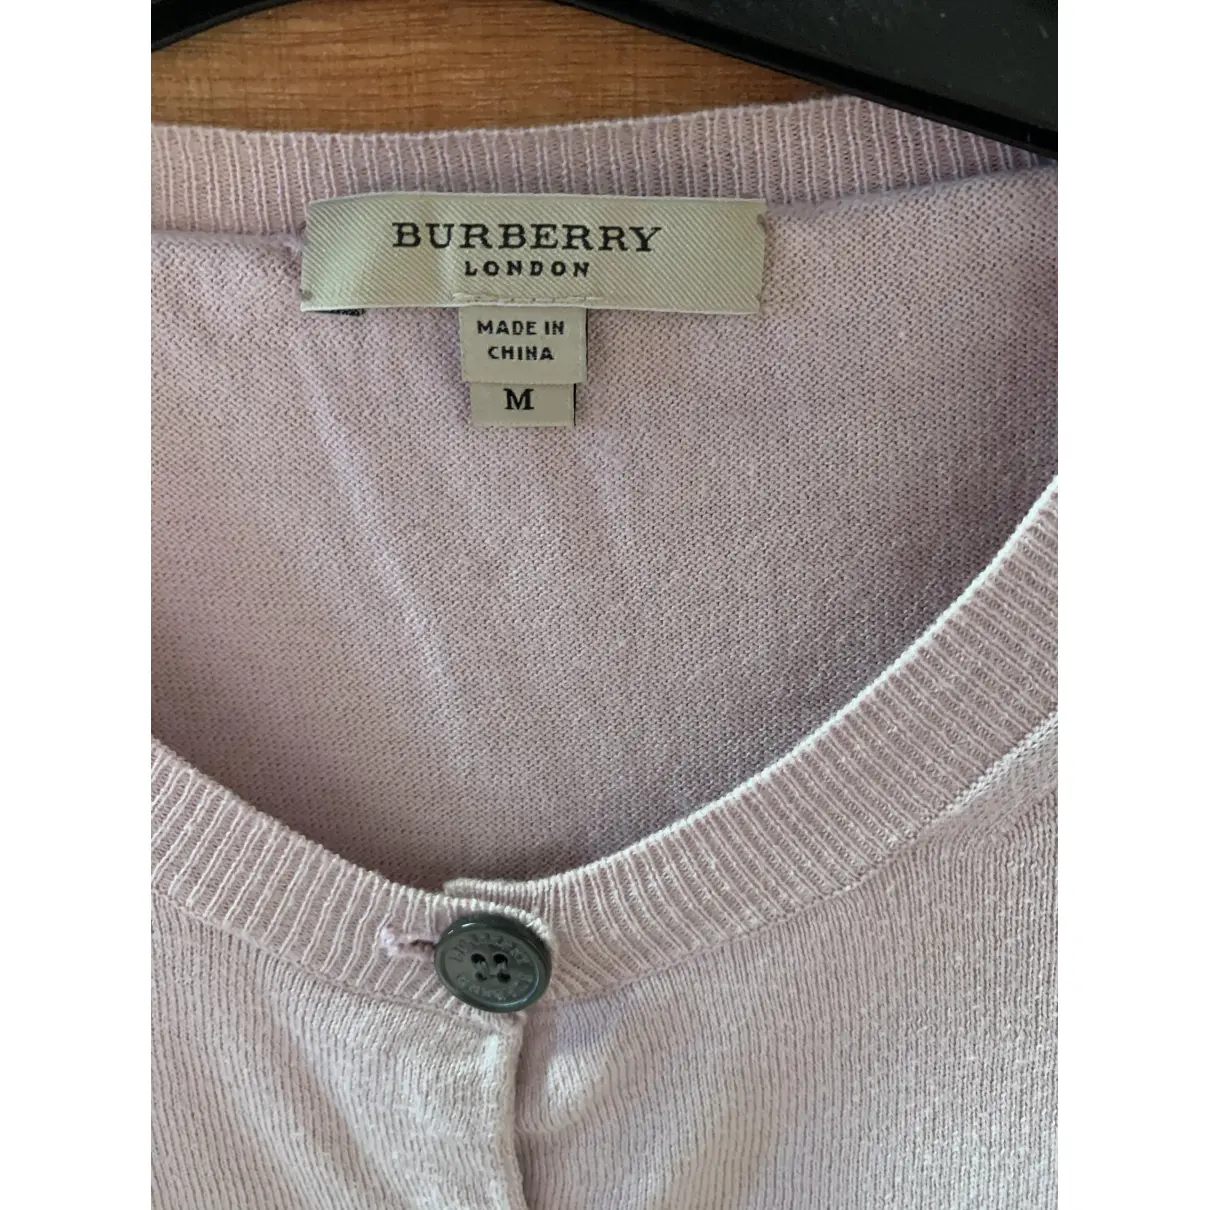 Buy Burberry Cardigan online